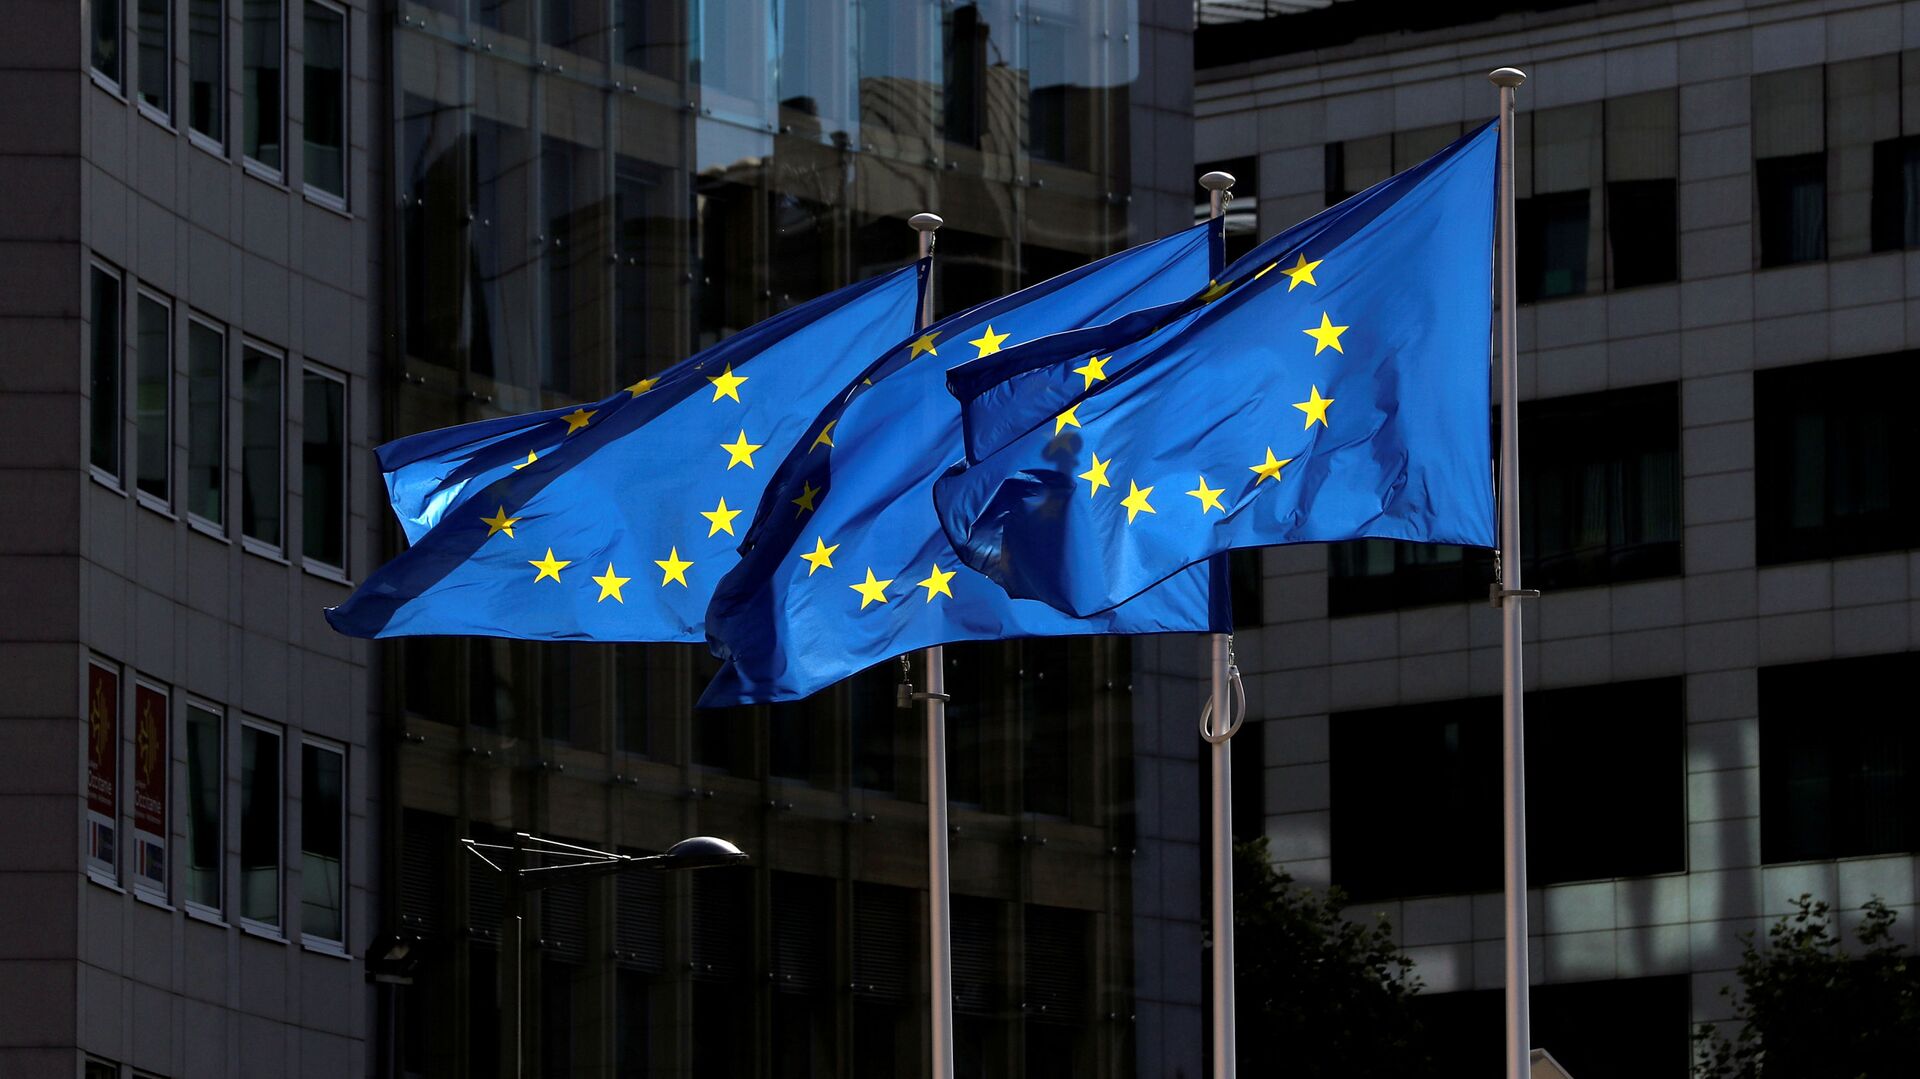 Флаги Европейского союза у штаб-квартиры Европейской комиссии в Брюсселе  - Sputnik Азербайджан, 1920, 16.04.2021